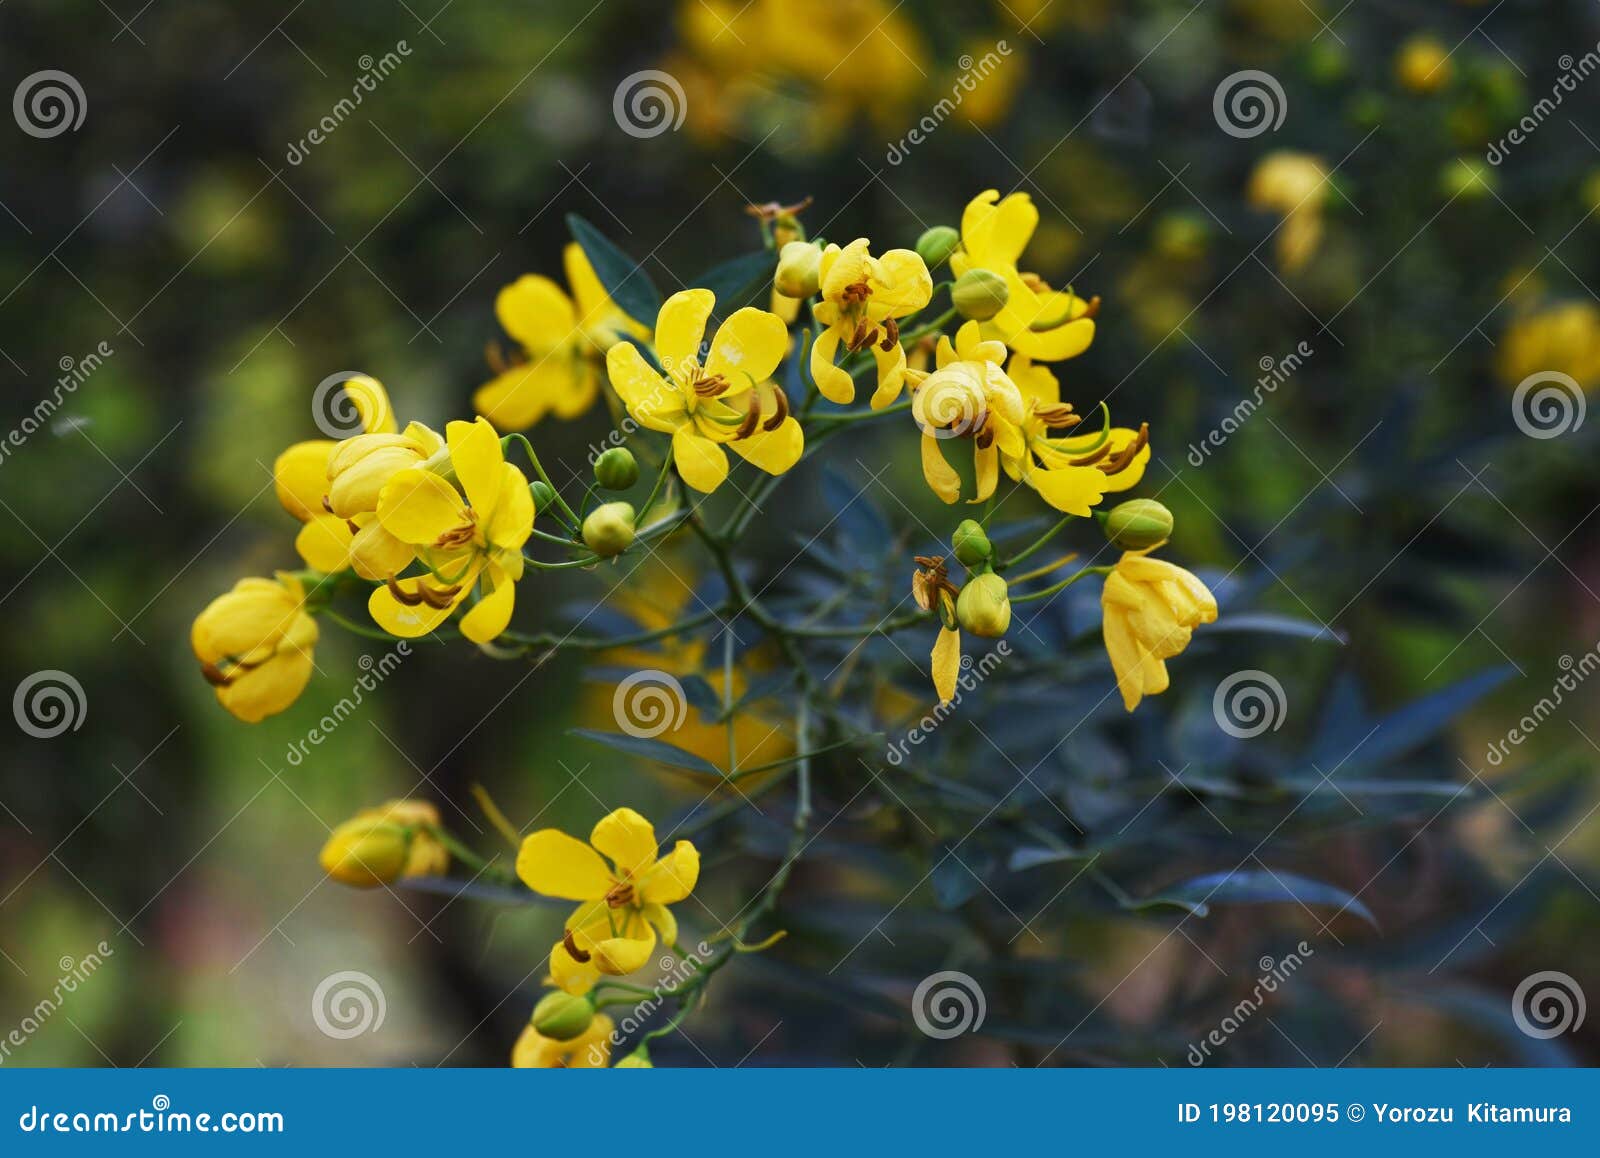 セナコリモサバターカップブッシュの花 Stock Image Image Of Blossom Green